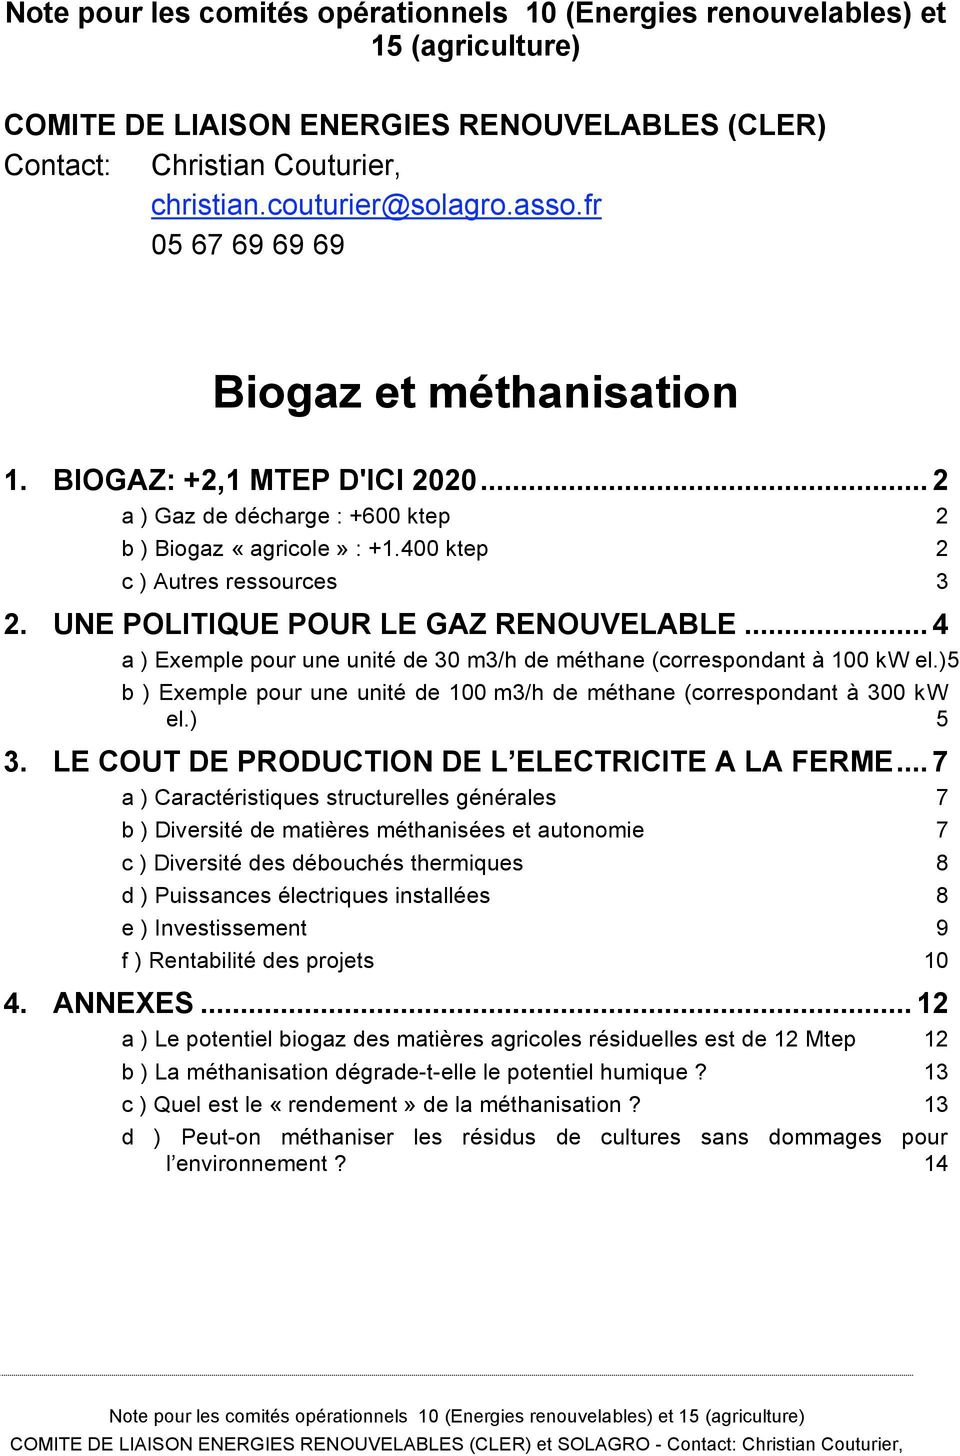 UNE POLITIQUE POUR LE GAZ RENOUVELABLE... 4 a ) Exemple pour une unité de 30 m3/h de méthane (correspondant à 100 kw el.)5 b ) Exemple pour une unité de 100 m3/h de méthane (correspondant à 300 kw el.